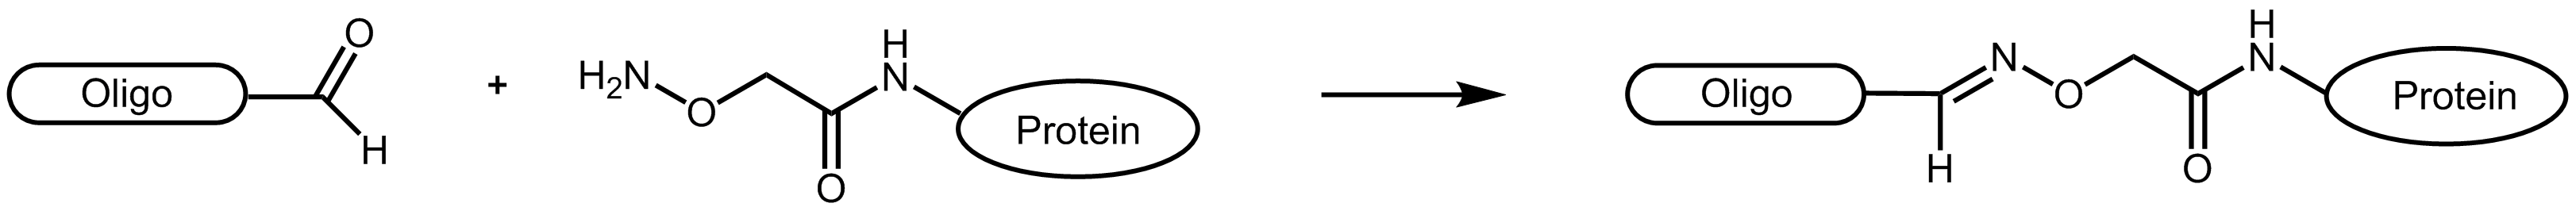 Reaktionsschemata eines Aldehyd-tragenden Oligonucleotids mit einem AOA-markierten Protein.